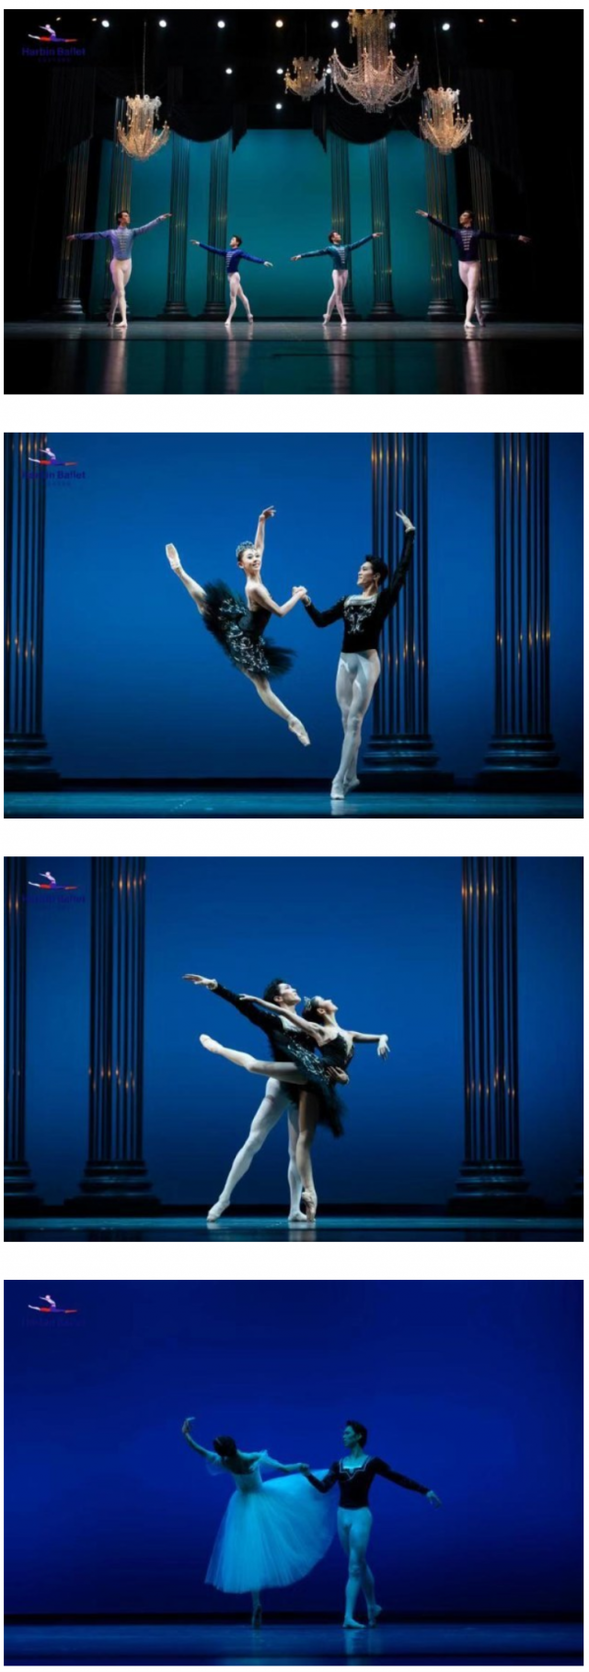 哈尔滨芭蕾舞团在冰雪世界中起舞飞翔